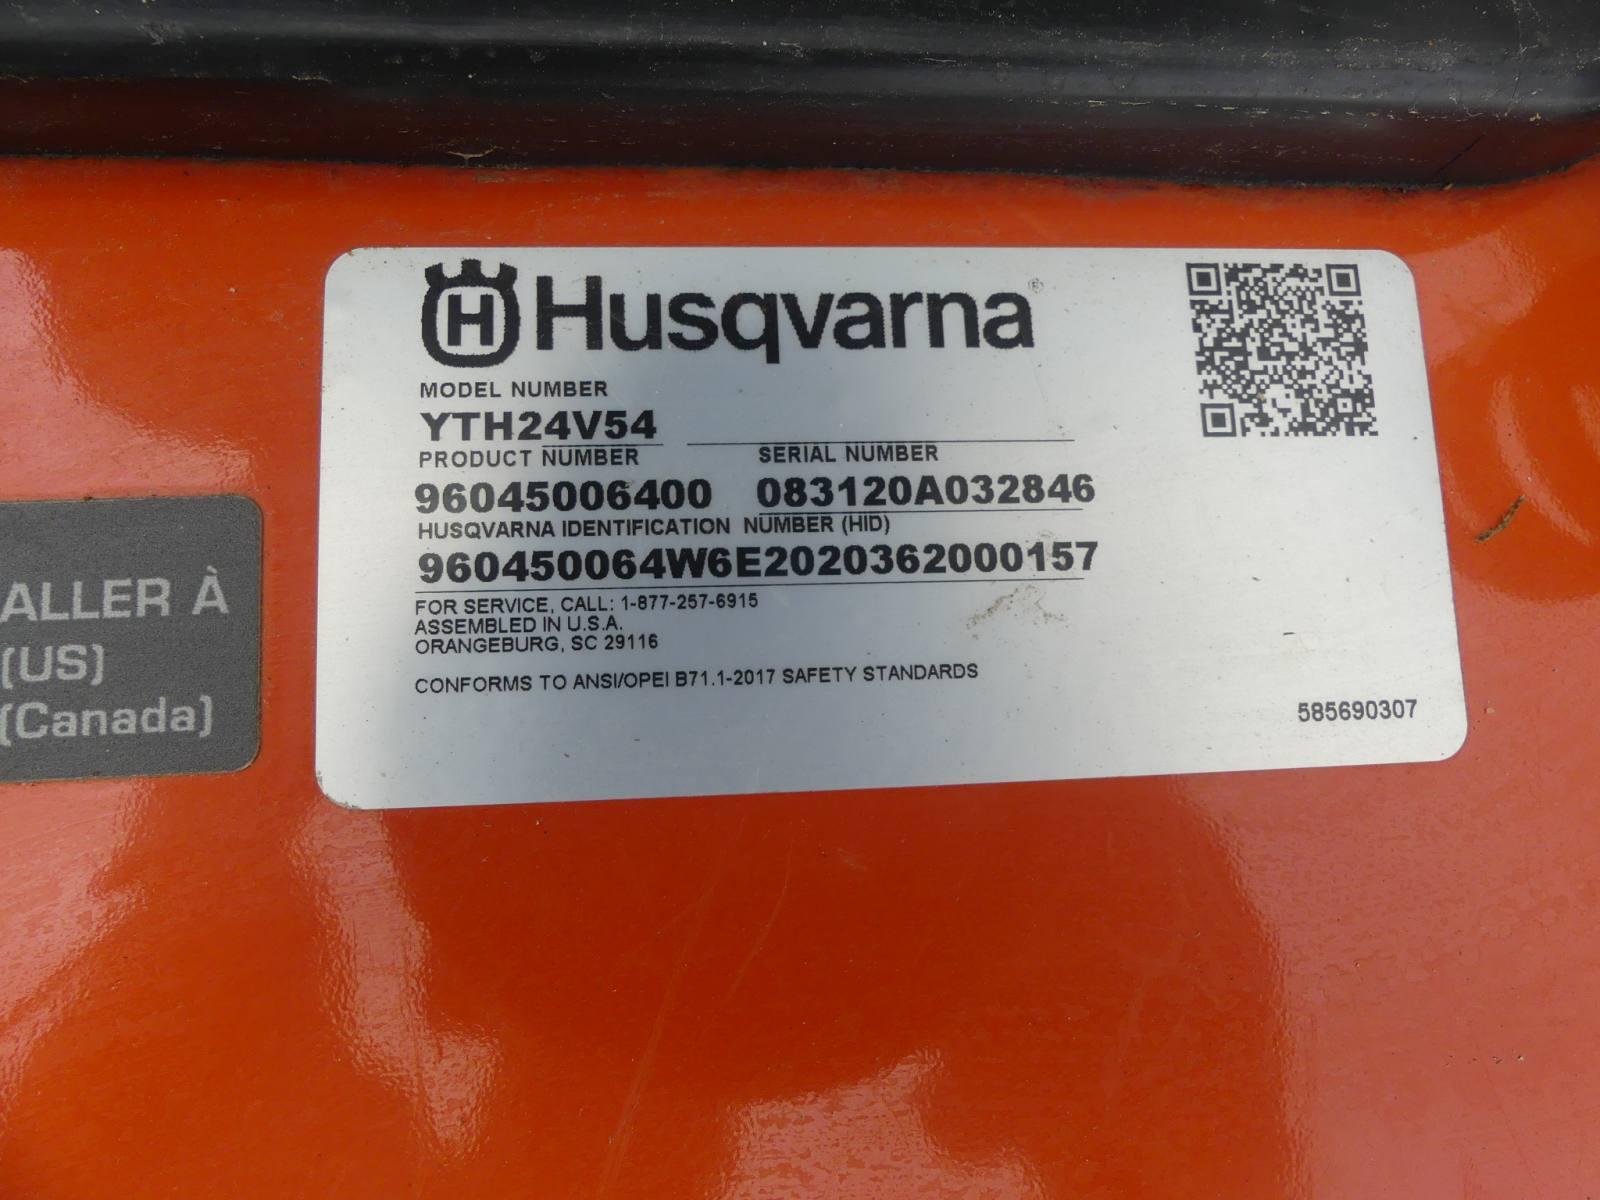 Husqvarna Riding Lawn Mower, s/n 32846: Model YTH24V54, Intek V-Twin 24hp G